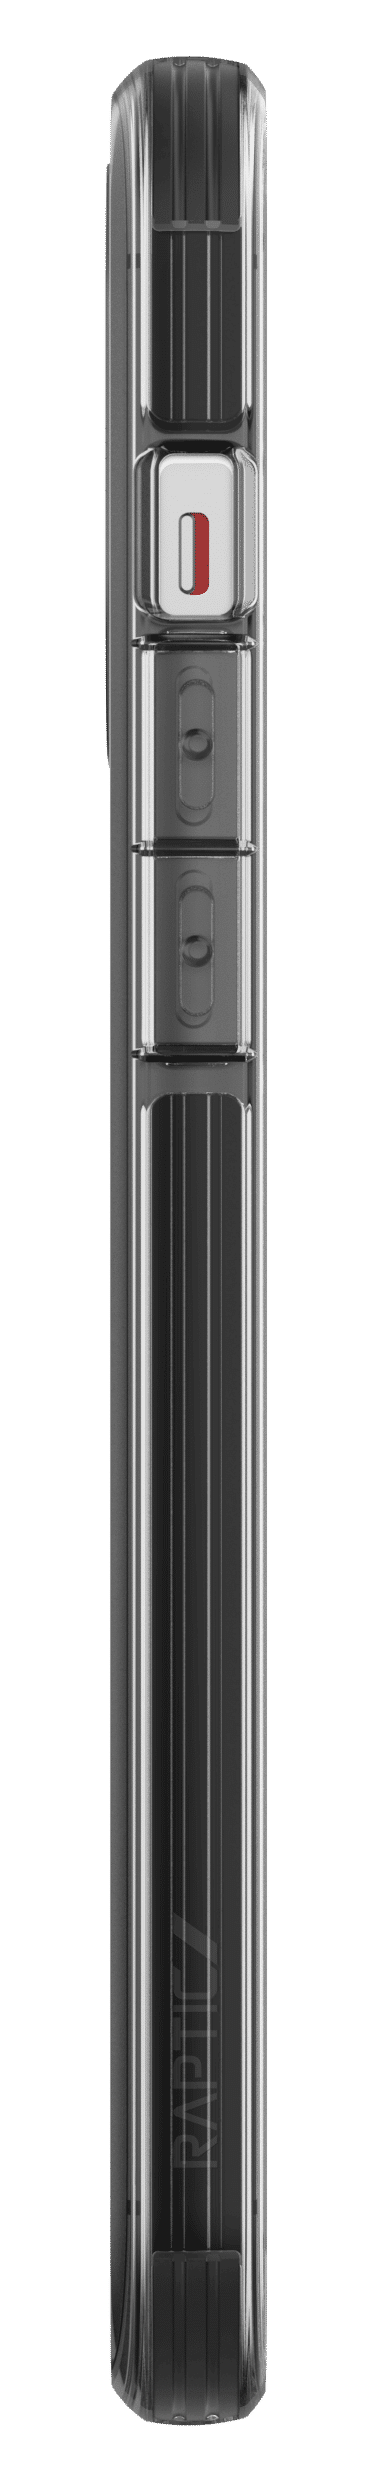 เคส X-Doria รุ่น Raptic Clear - iPhone 12 Pro Max - Smoke